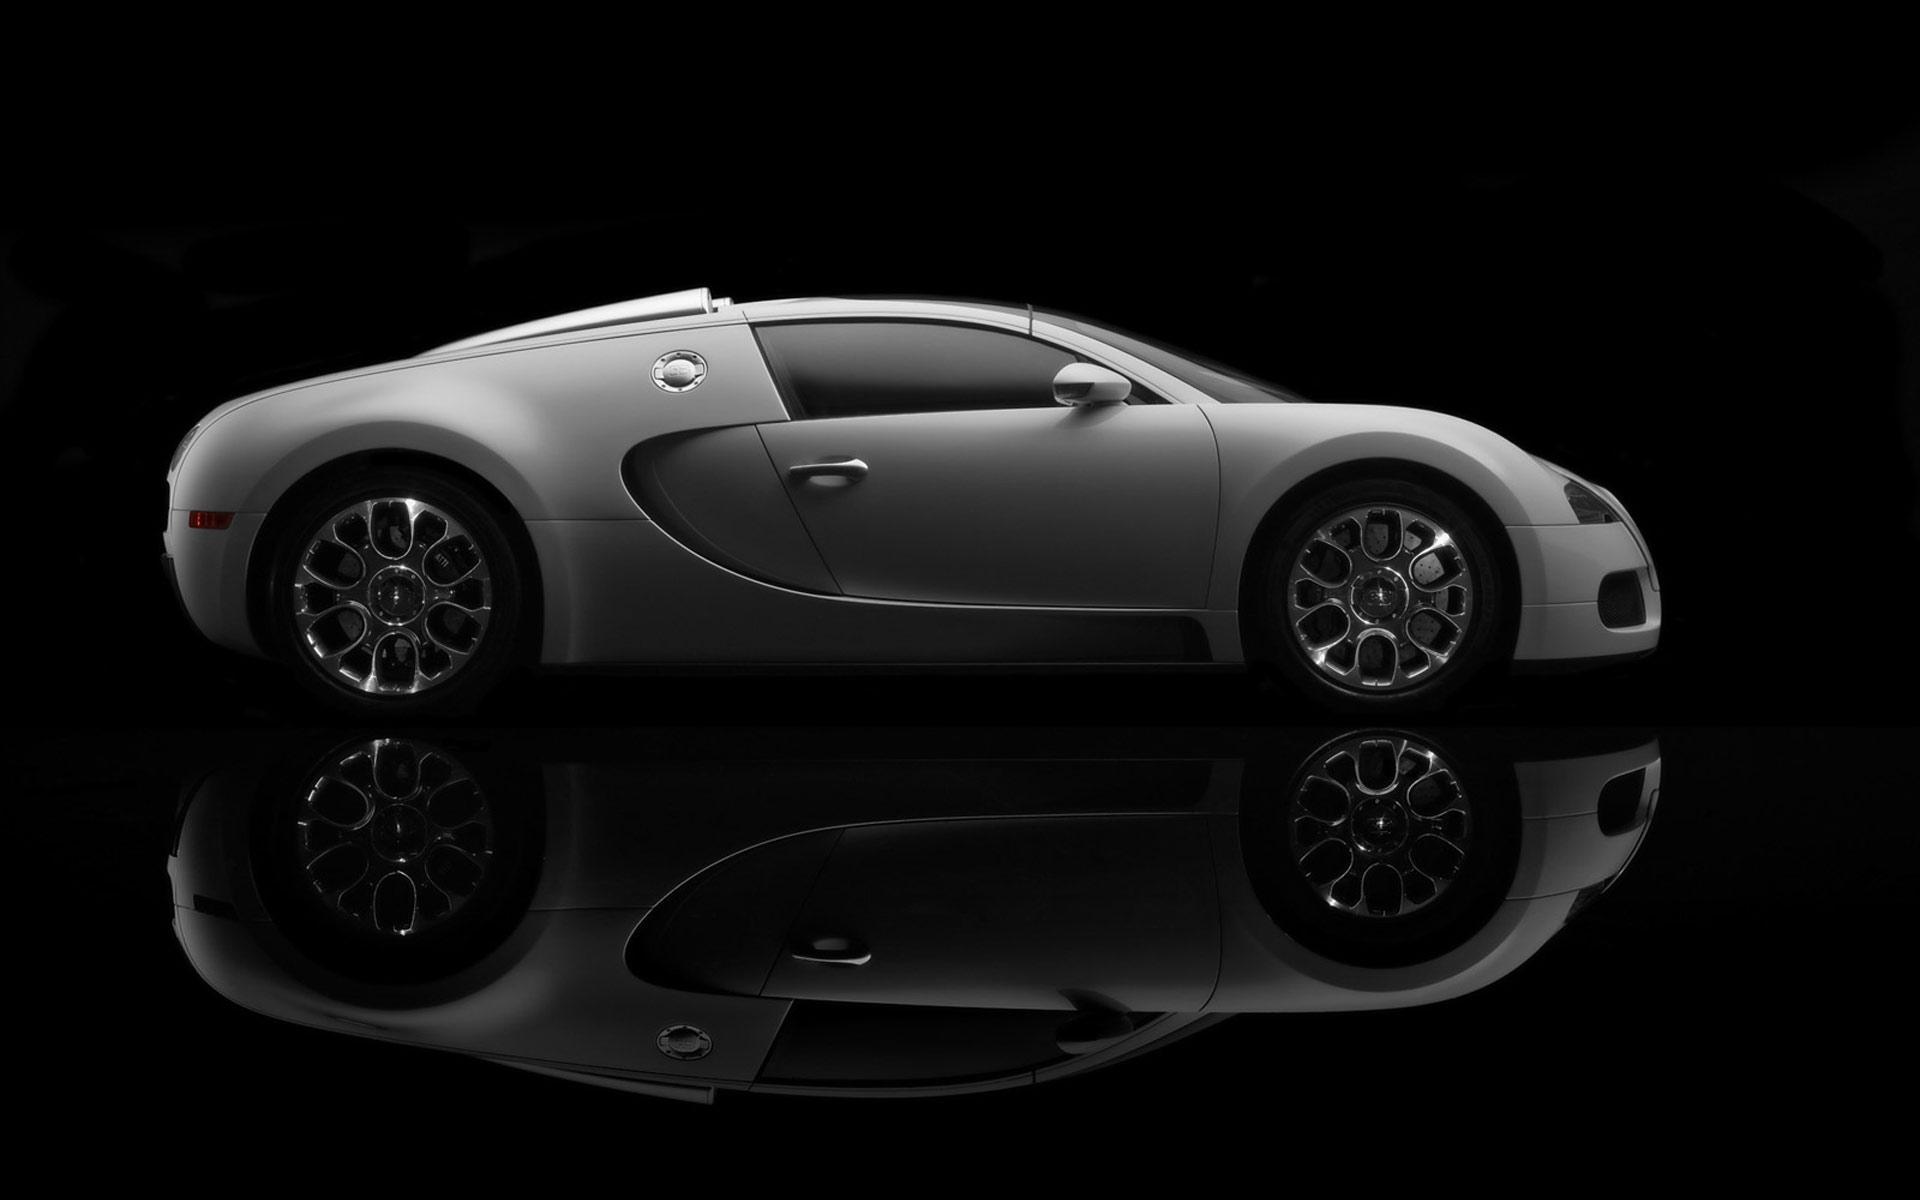 Black Bugatti Veyron Wallpaper 6045 HD Wallpaper Jpg Car Picture